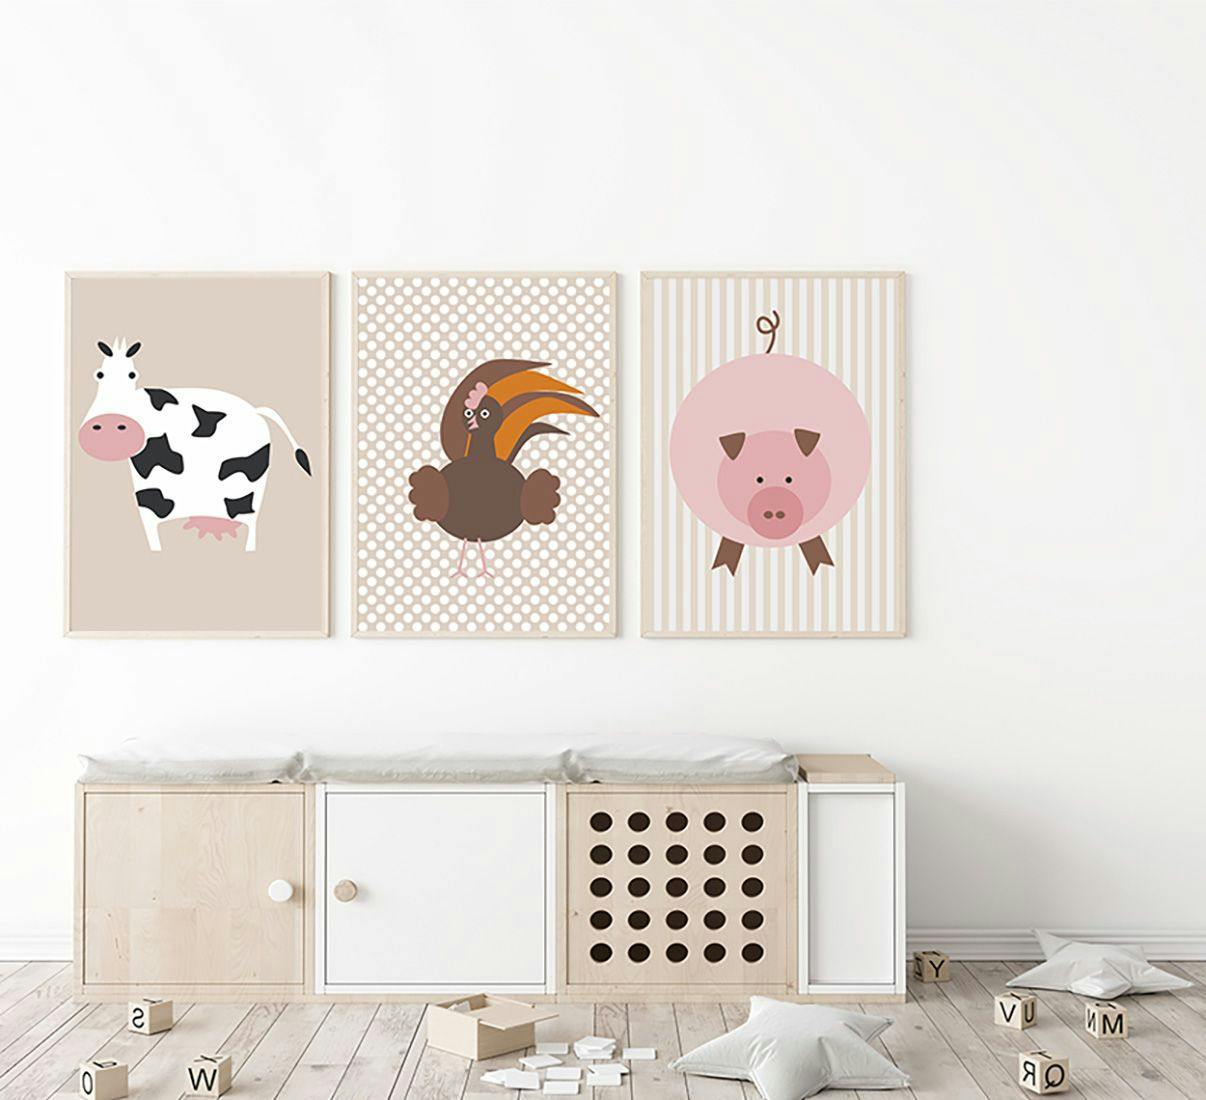 Plakat tryptyk do pokoju dziecka ze zwierzętami hodowlanymi.